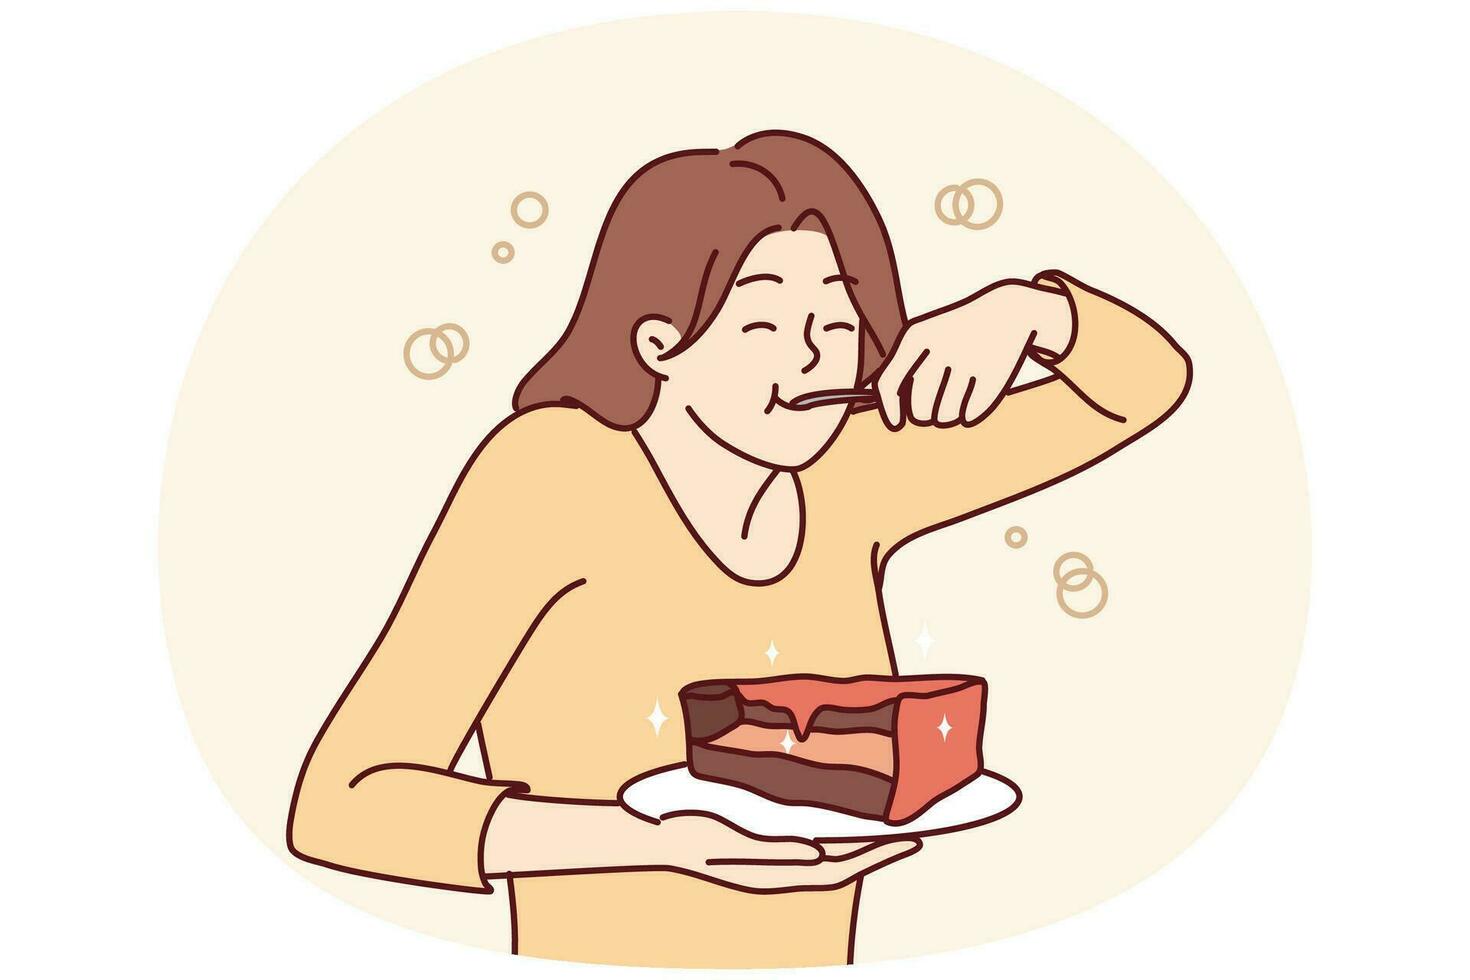 jovem com fome comendo bolo sofre de transtorno alimentar. garota feliz gosta de sobremesa de chocolate. prazer culpado. ilustração vetorial. vetor